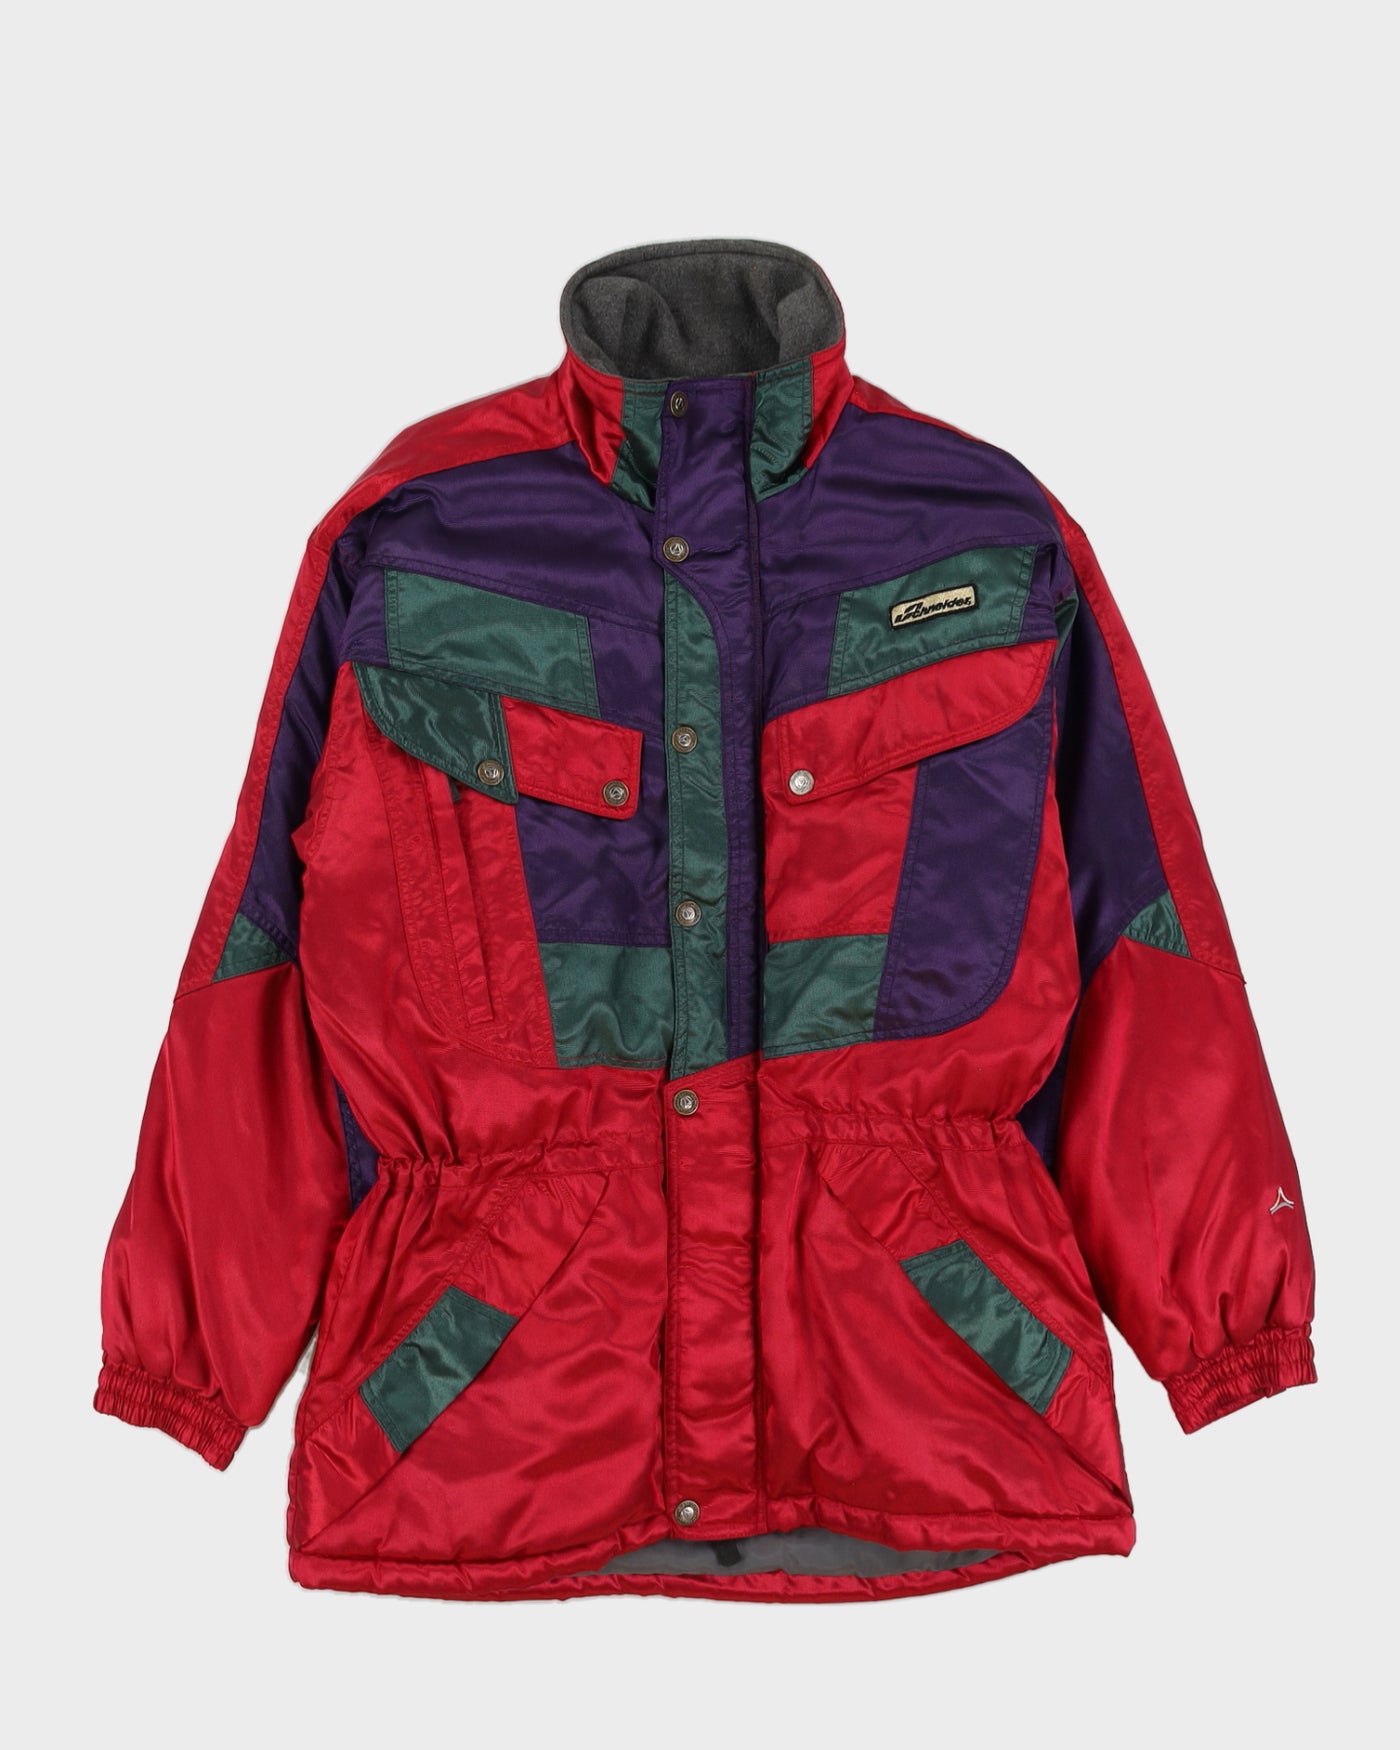 Vintage 90s Schneider Ski Multi-coloured Jacket - L